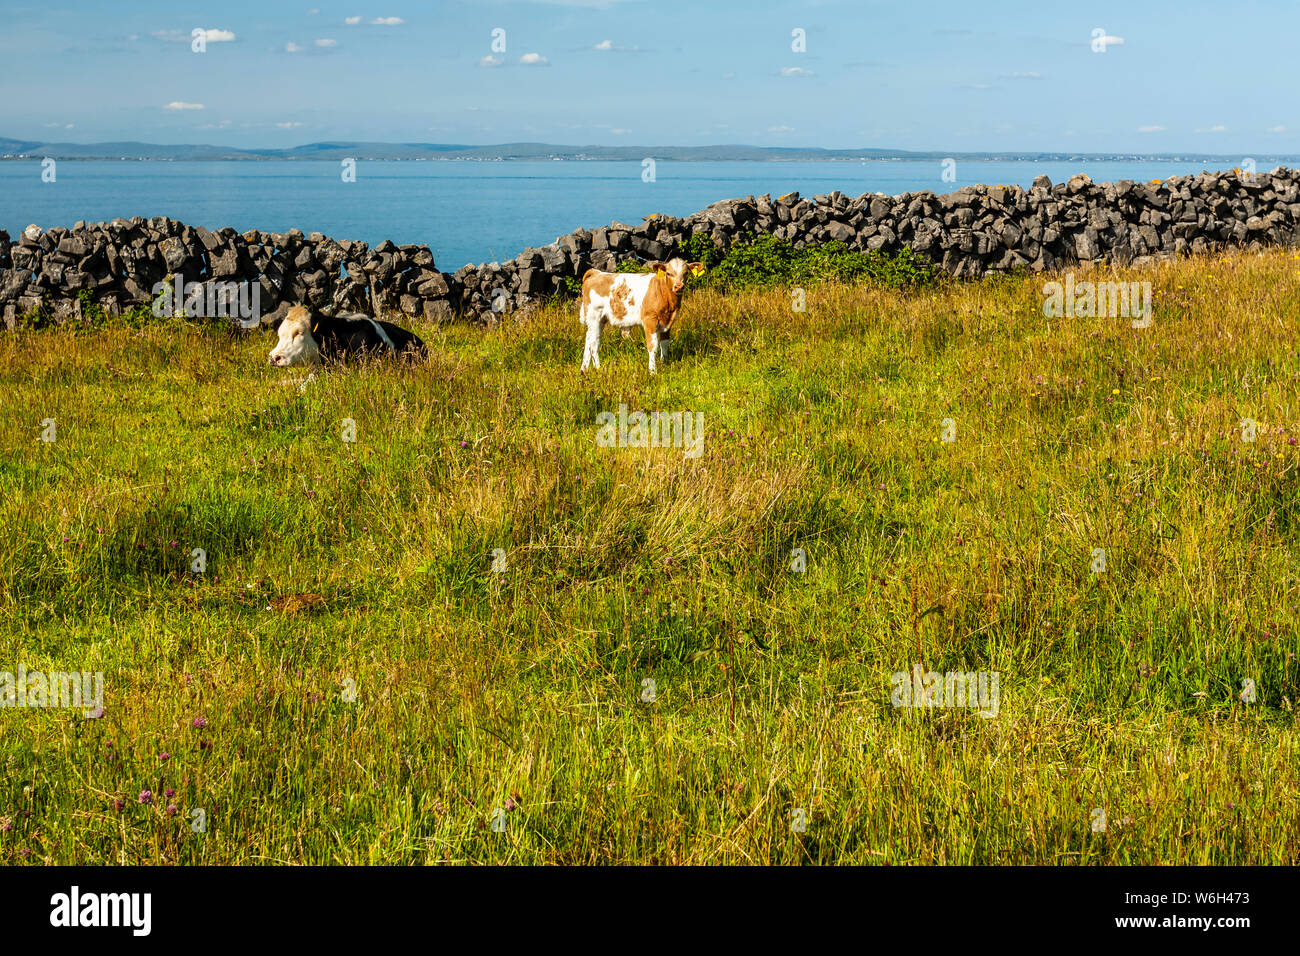 Les vaches paissent dans l'herbe luxuriante dans un champ le long de la côte de l'Irlande, façon sauvage de l'Atlantique ; l'Inishmore Island, comté de Galway, Irlande Banque D'Images